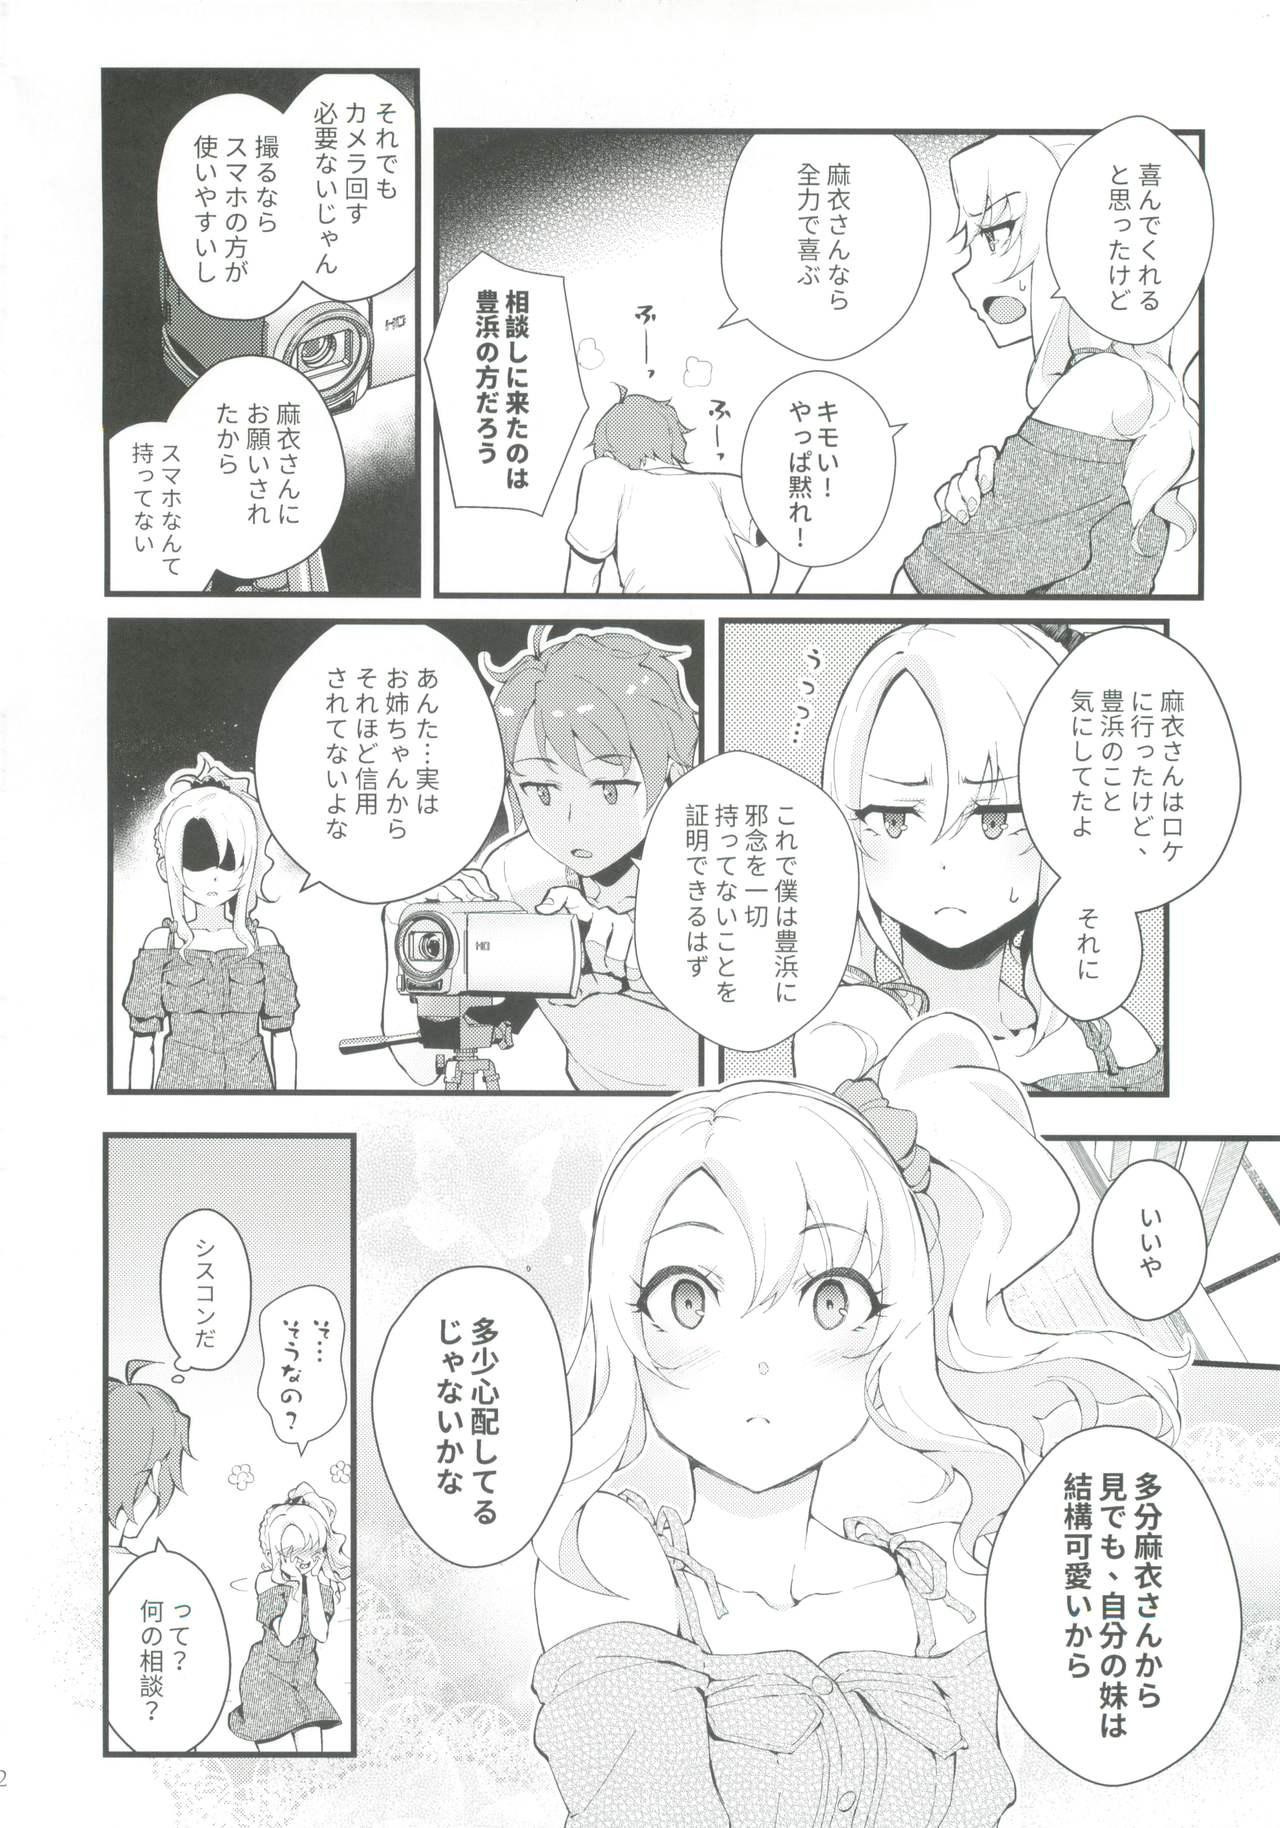 Gape Sisters Panic - Seishun buta yarou wa bunny girl senpai no yume o minai Bear - Page 3